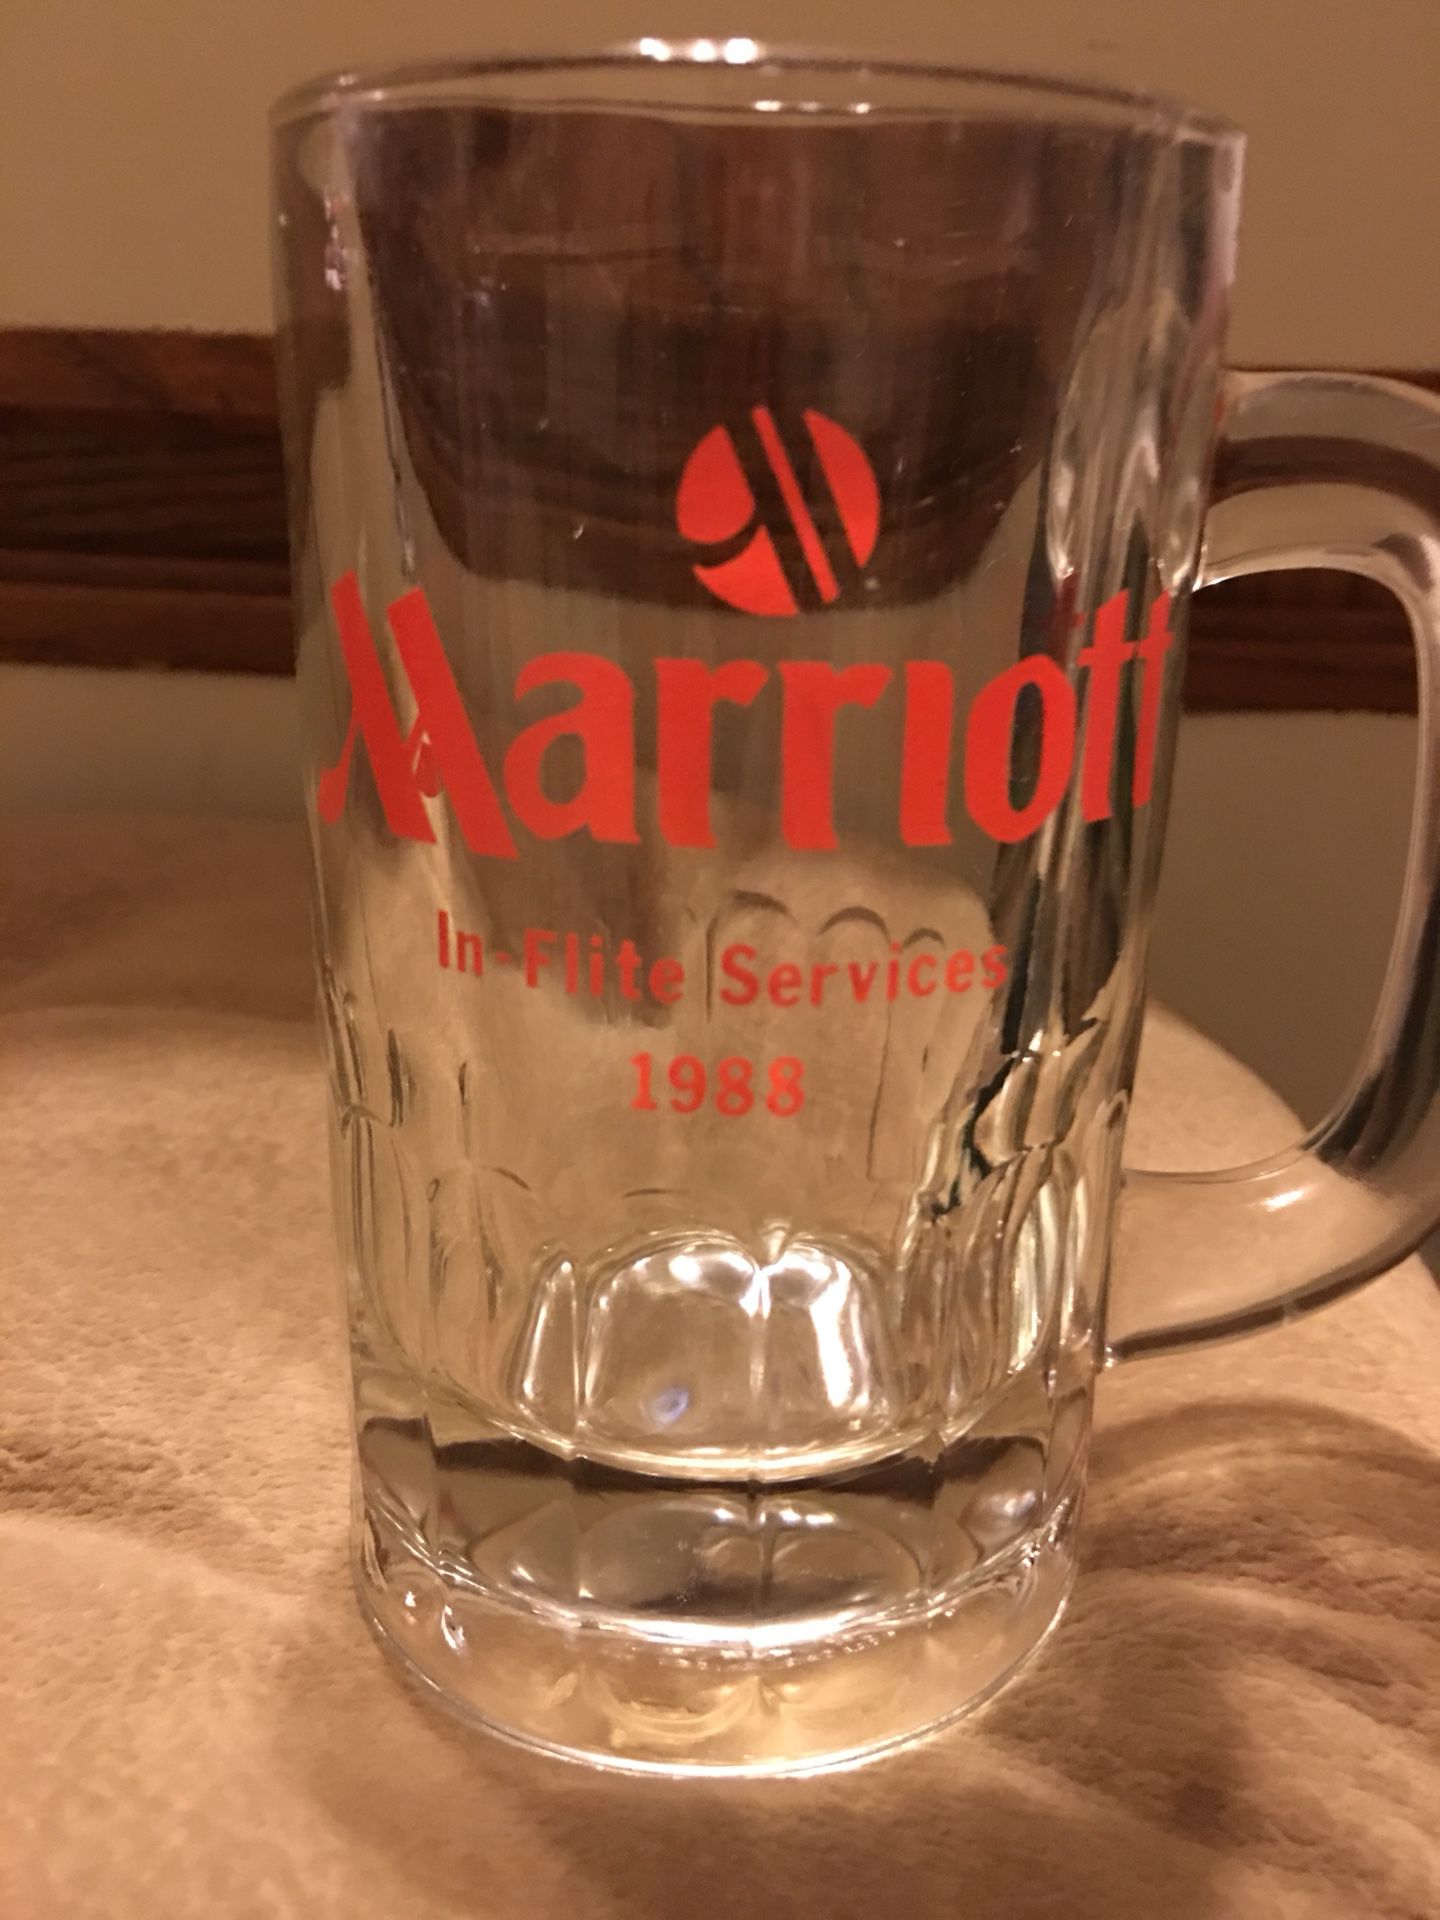 Marriott beer mug - vintage